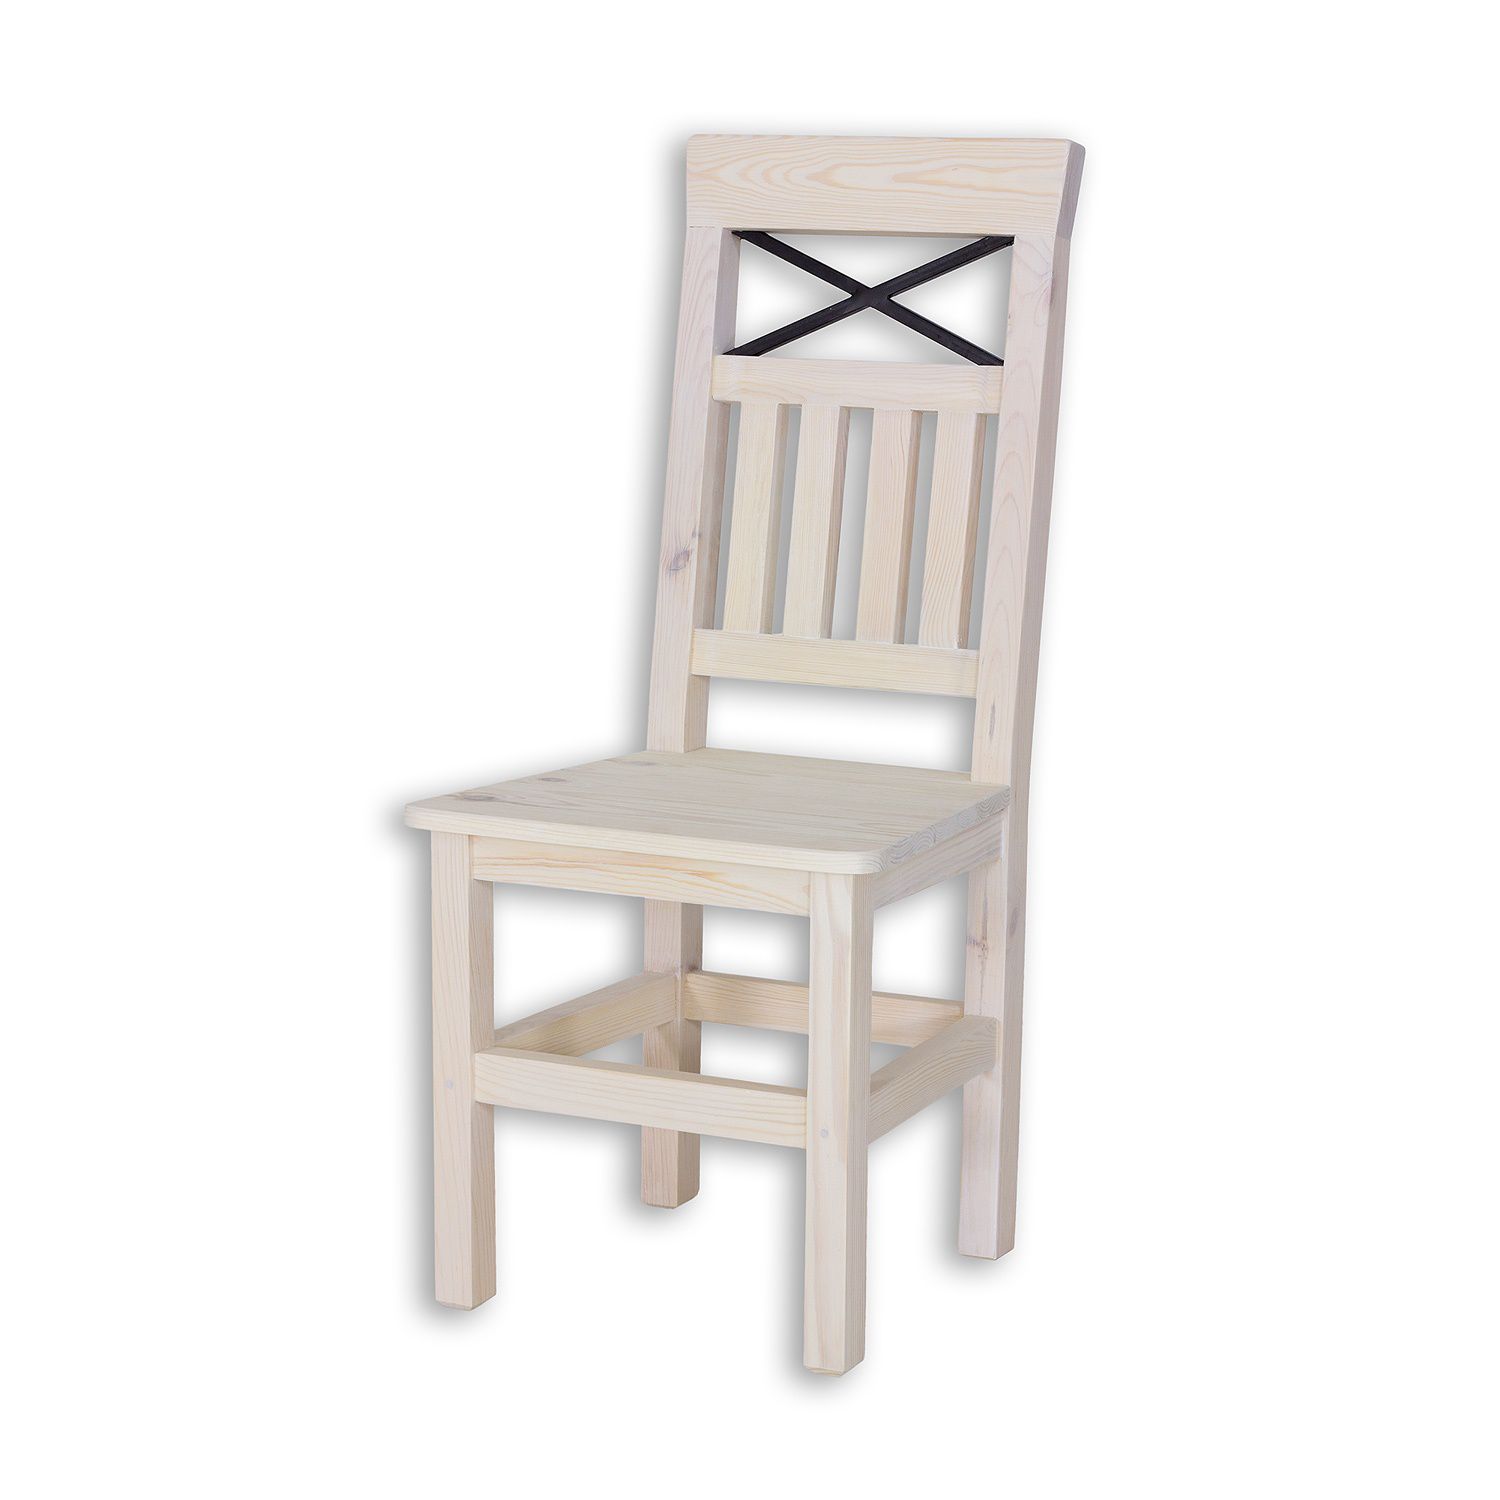 Masivní židle SEL 15 - K13/K02 (bělená borovice/hnědá) - Nábytek Harmonia s.r.o.